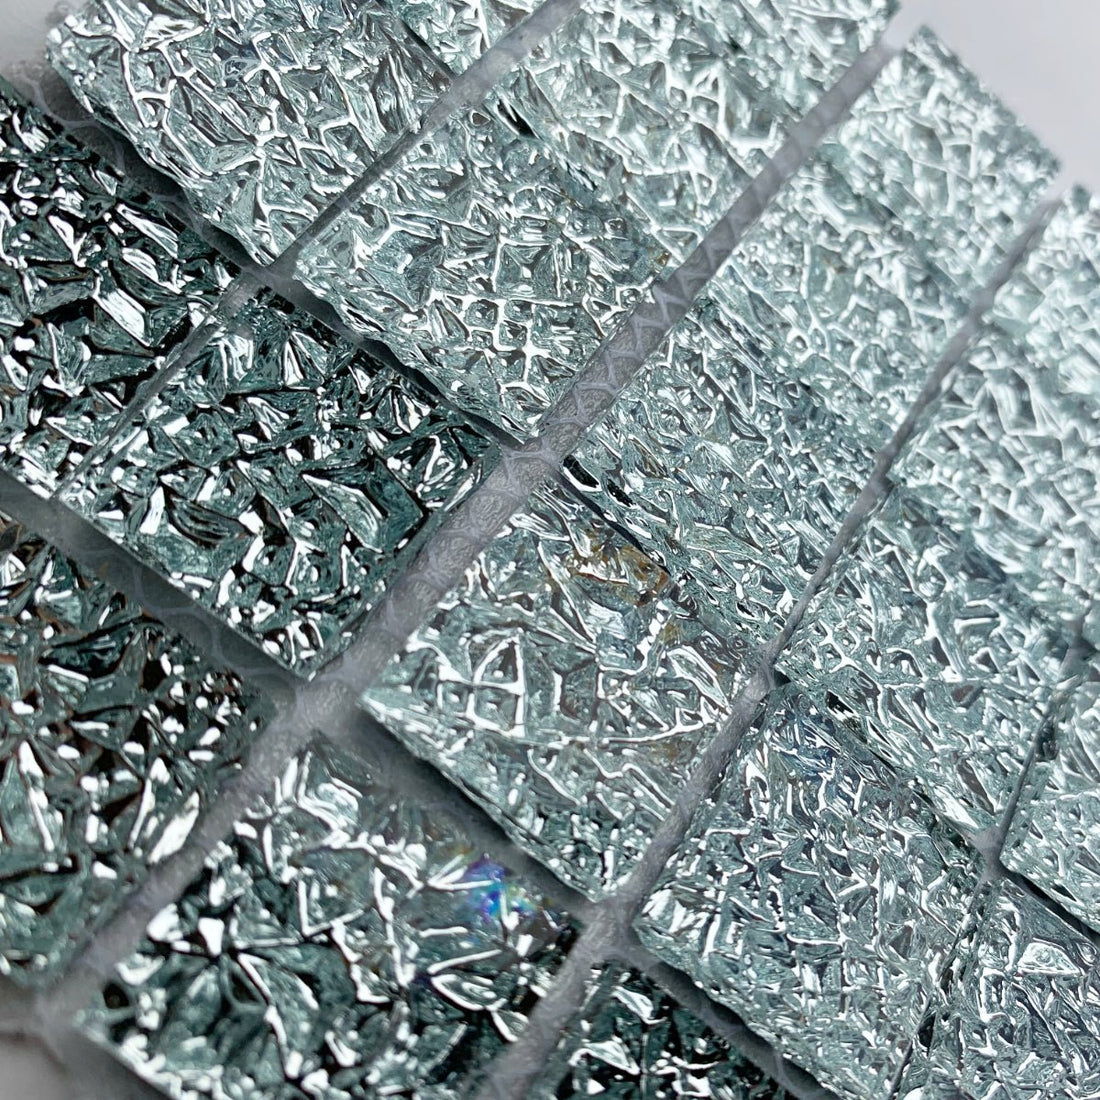 Verre Mosaique - glass mosaic -Glasmosaik-glasmozaïek-Spiegel textuur 20mm - mosaicshop